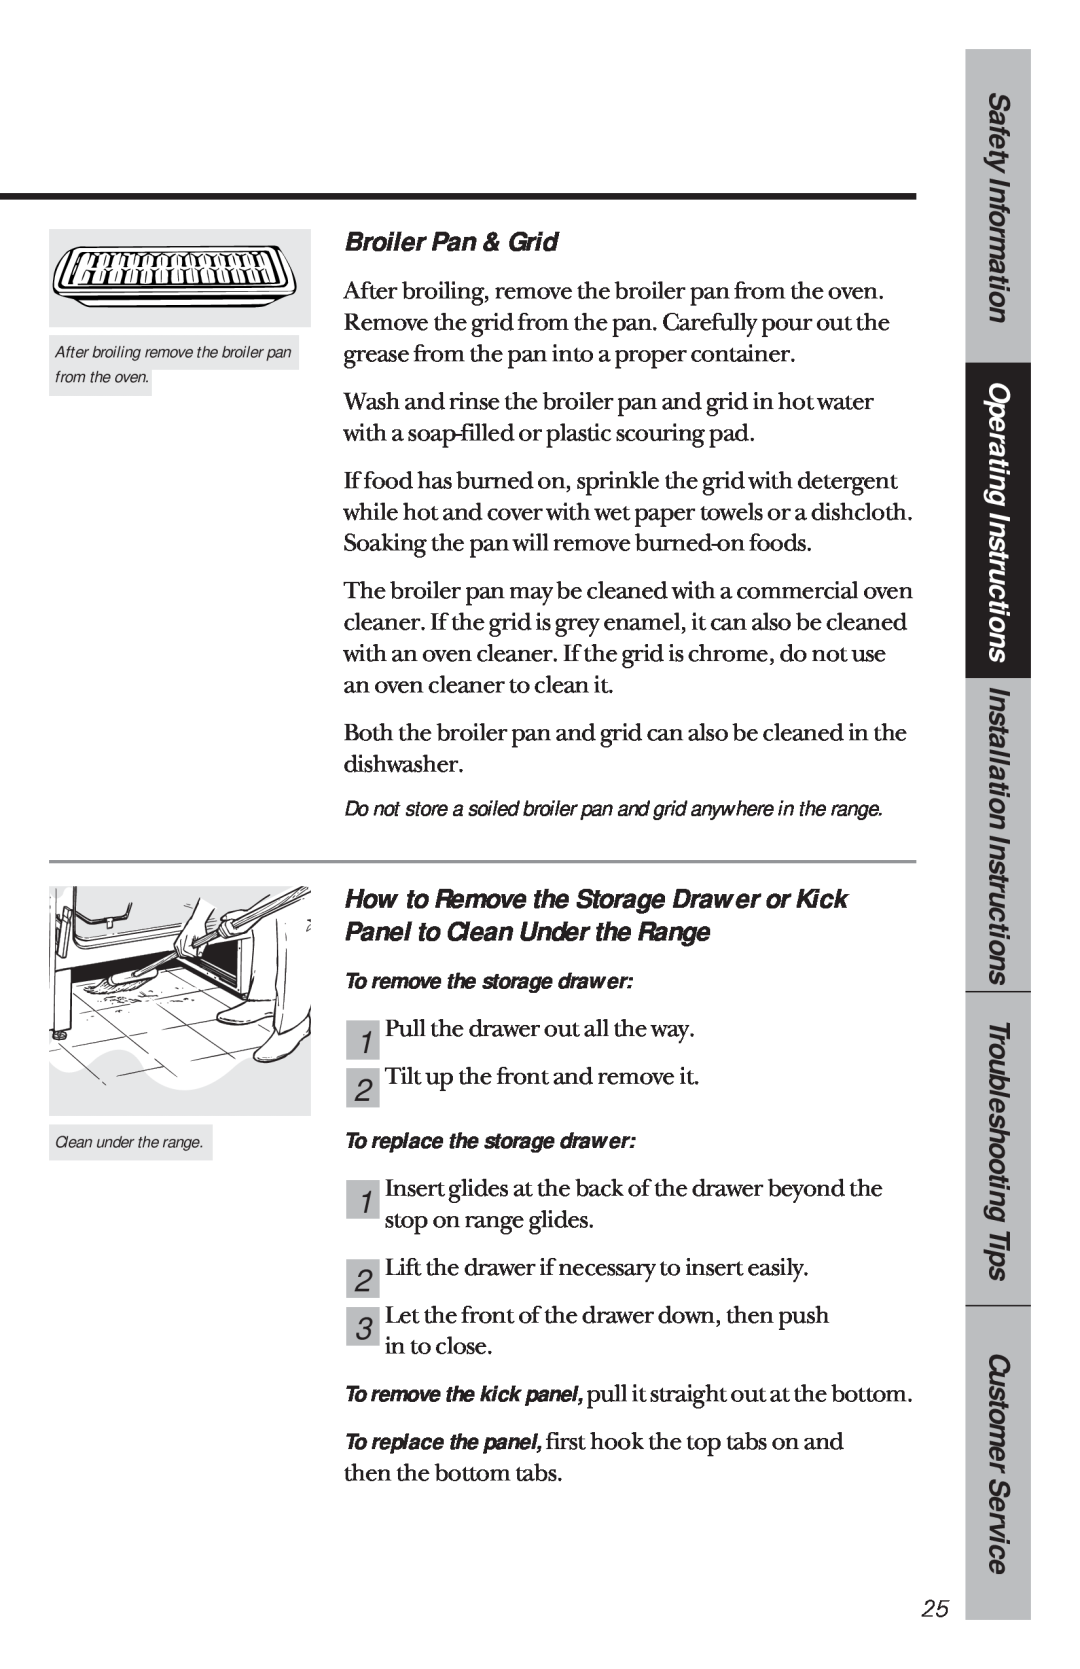 GE JBP21, JBP30, JBP26, JBP22 Broiler Pan & Grid, How to Remove the Storage Drawer or Kick, Panel to Clean Under the Range 